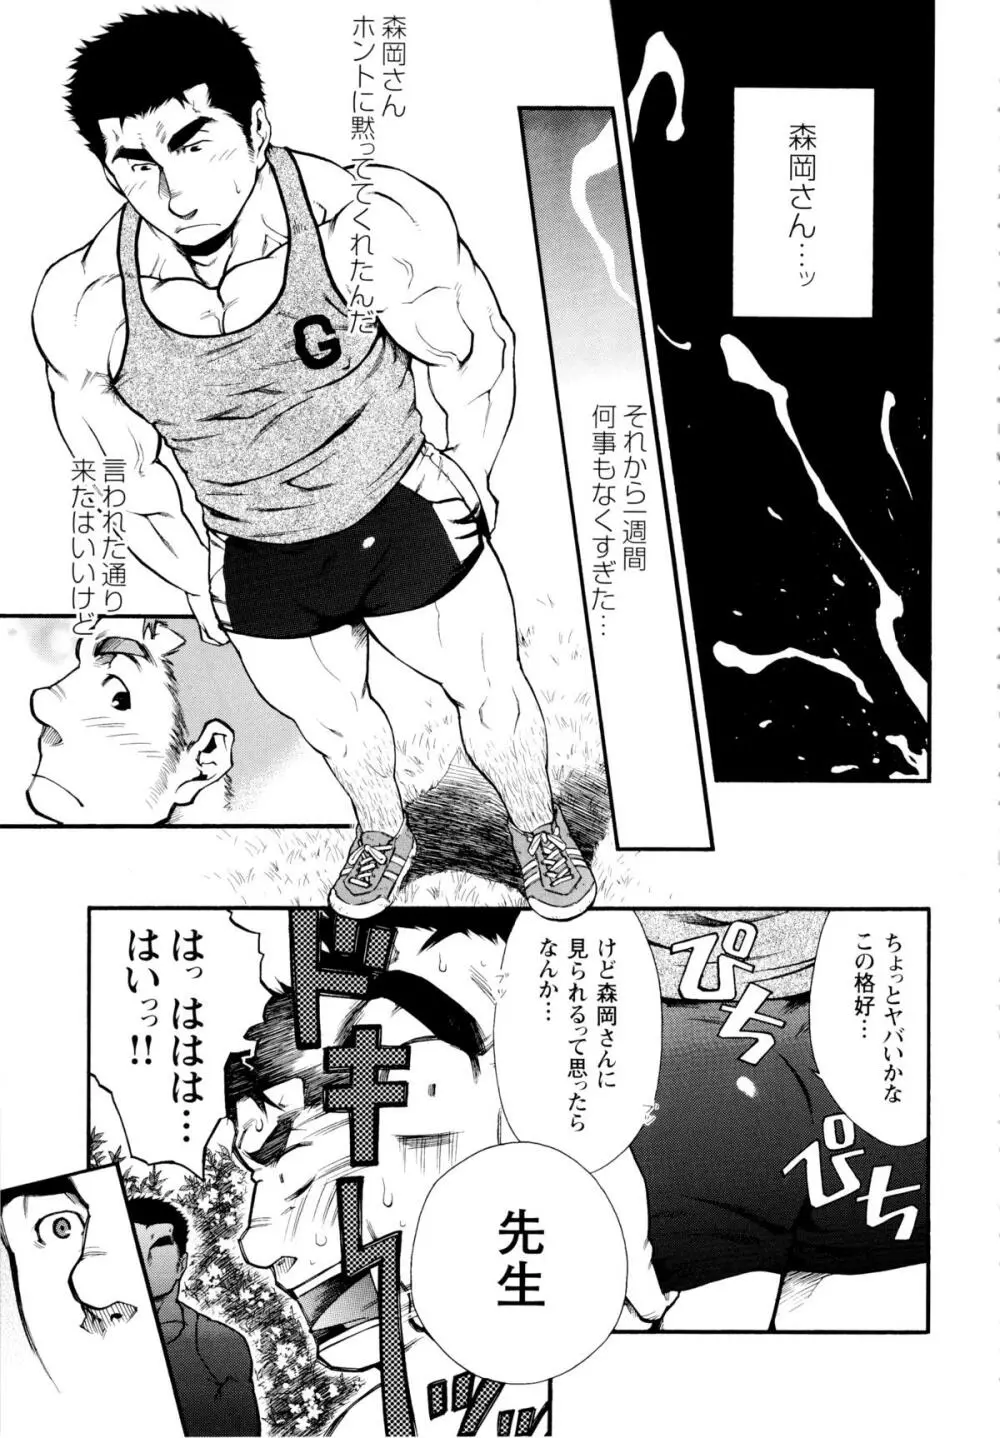 Osu Hachi no Mitsu – by -晃次郎 (Terujirou) 5ページ